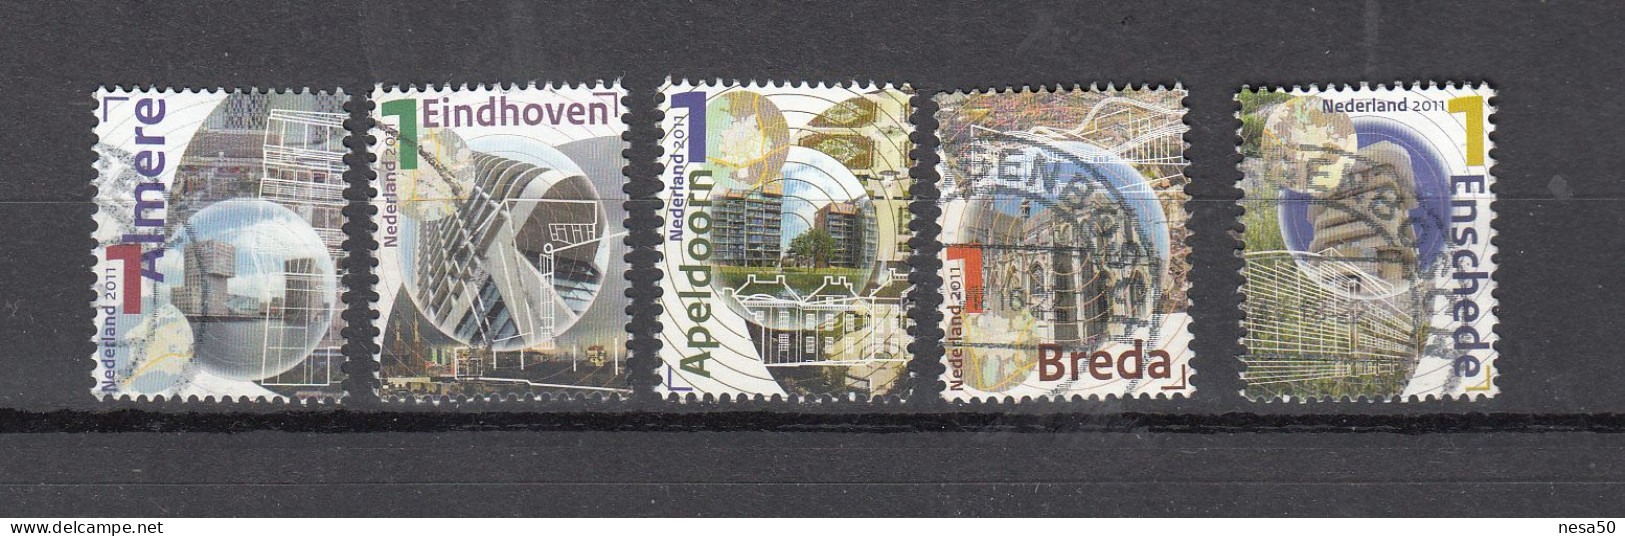 Nederland 2011 Nvph Nr 2789 A, 2790 A, 2813a, 2814 A , 2821a, Mooi Nederland, Eindhoven, Almere, Apeldoorn, Breda, Ensc - Used Stamps